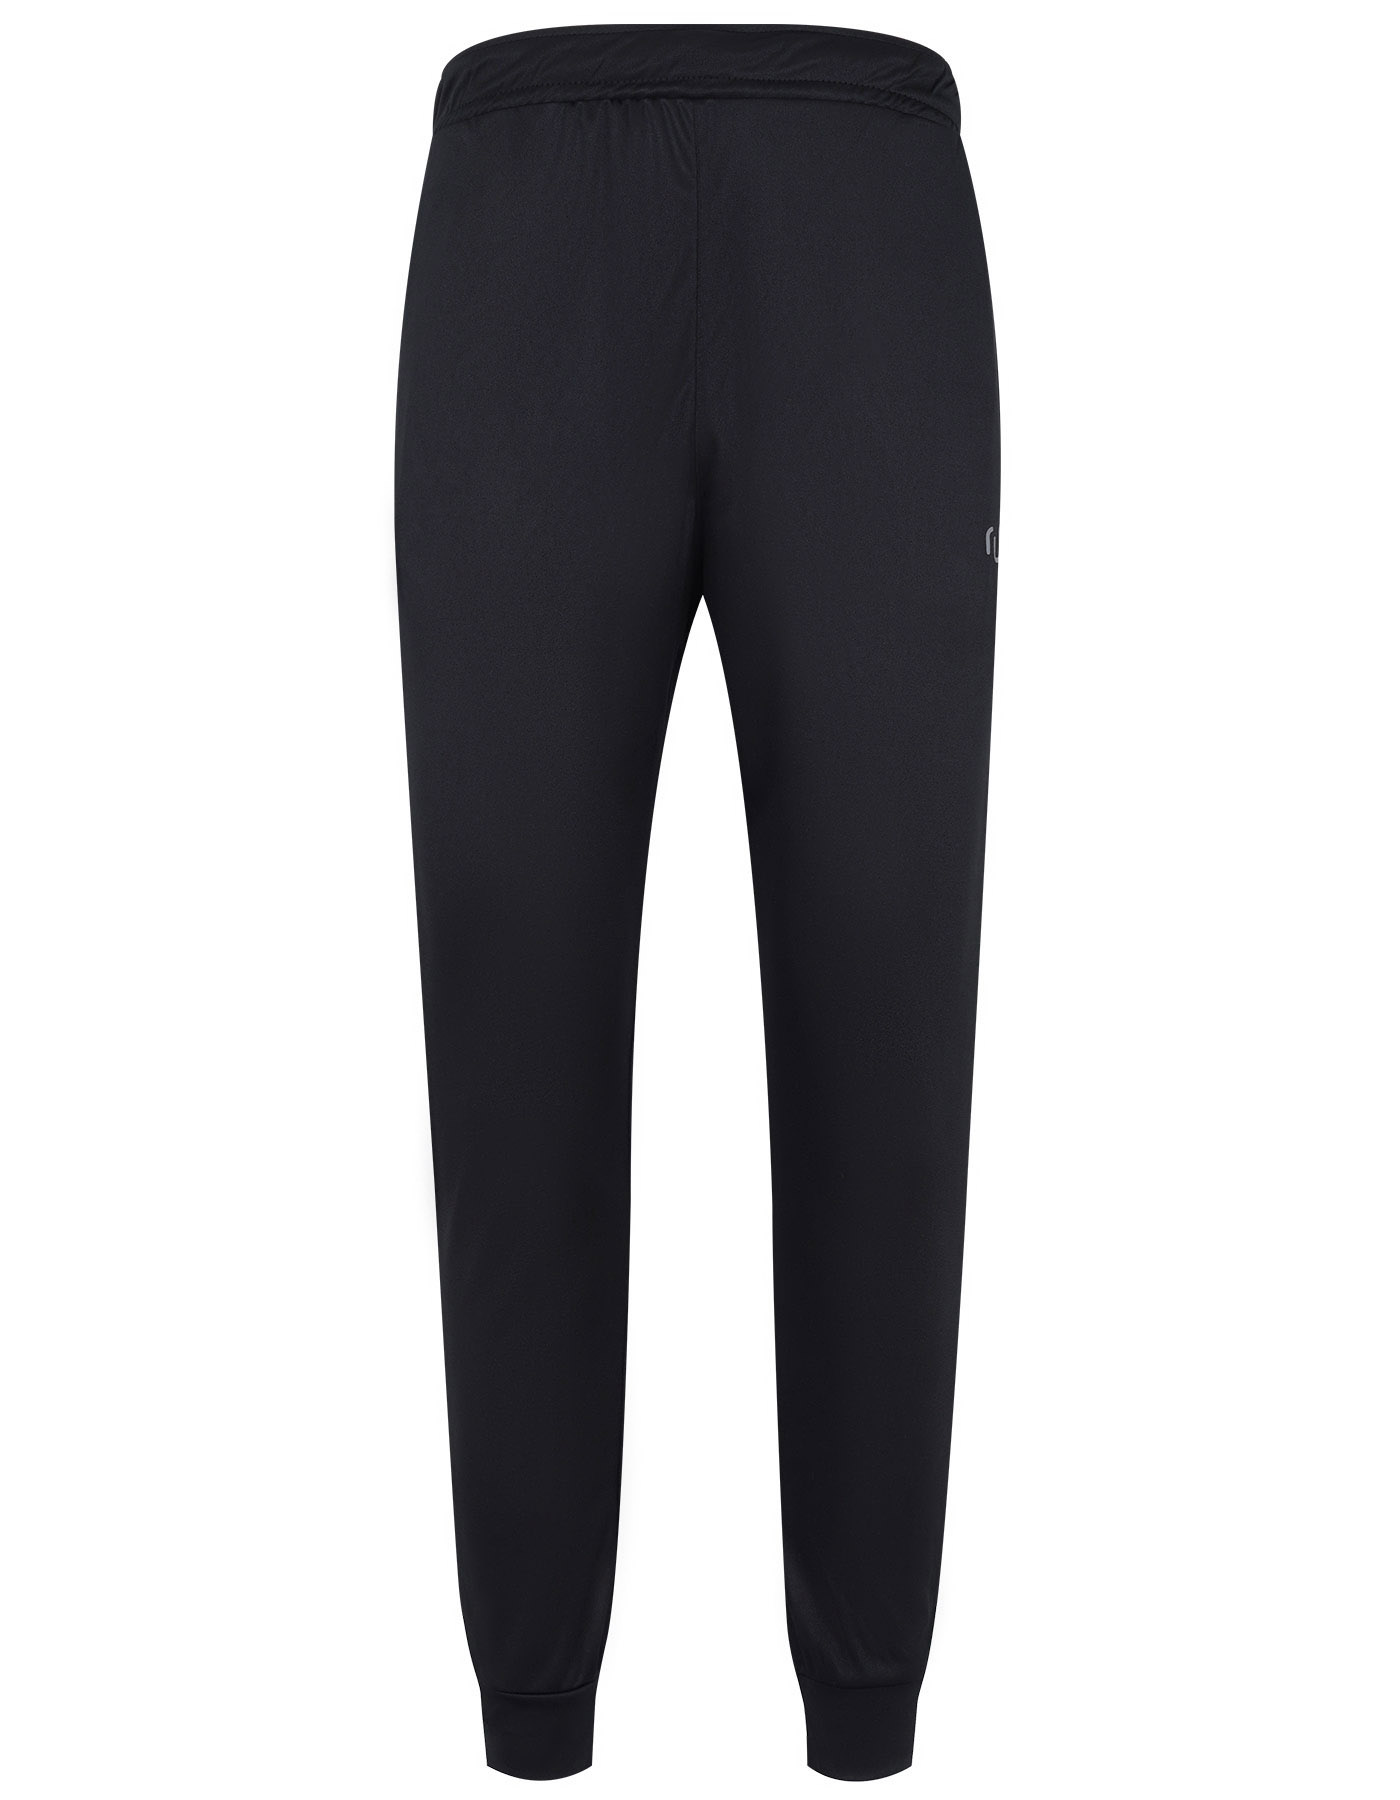 Gym Trouser Black FGTR2313-2 N/I Uniworth